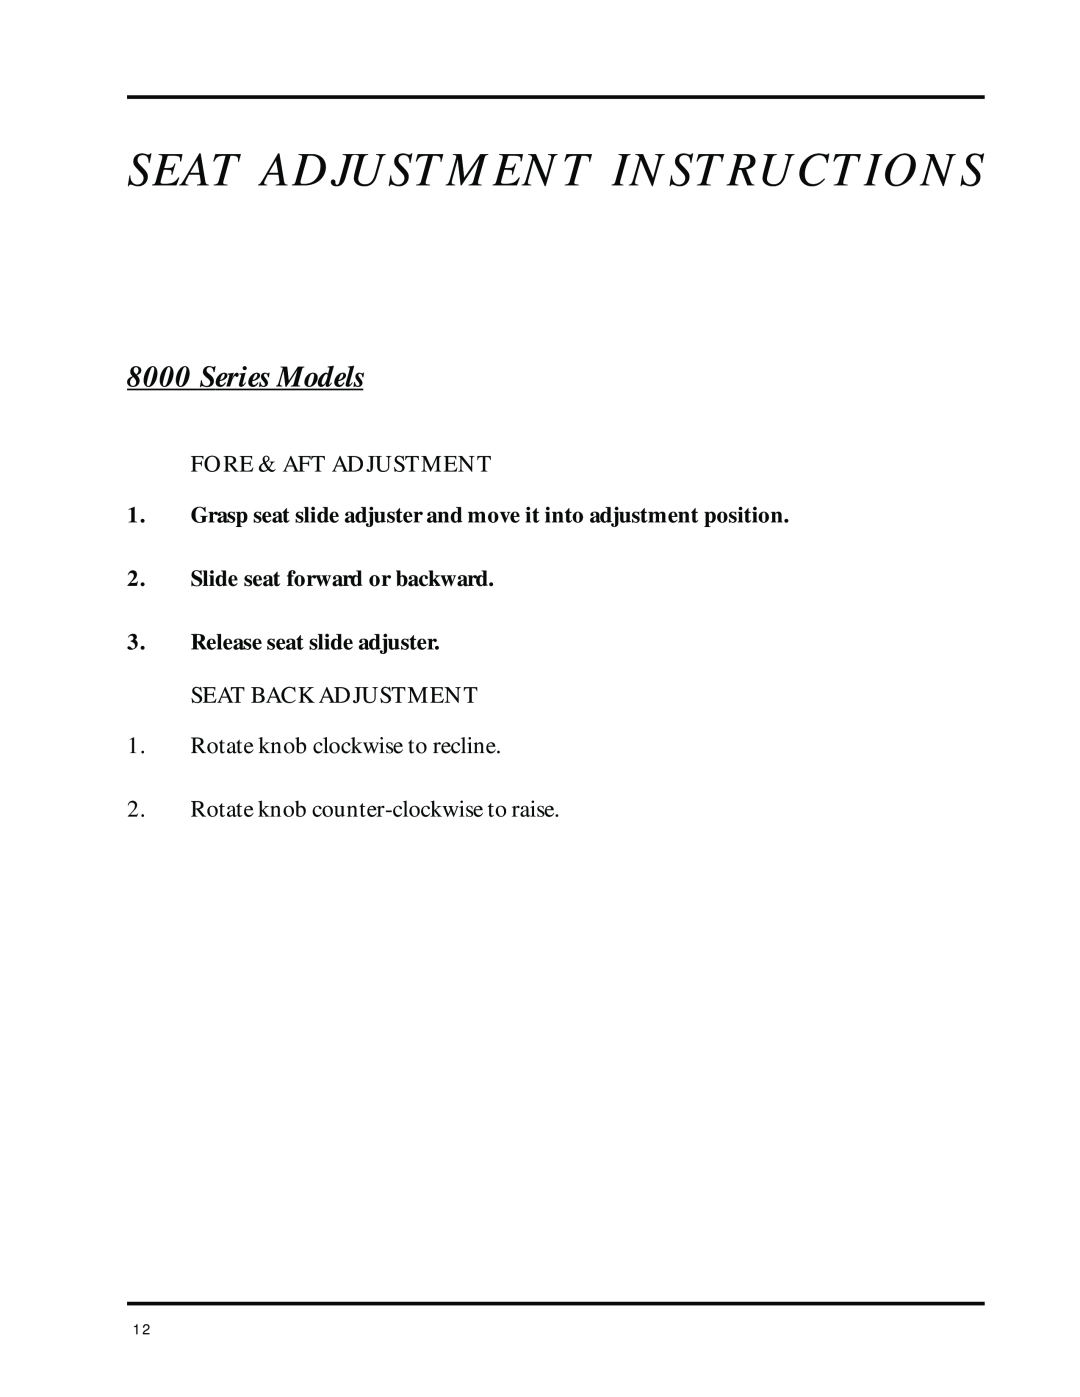 Dixon ZTR 8025 manual Series Models, Seat Adjustment Instructions 